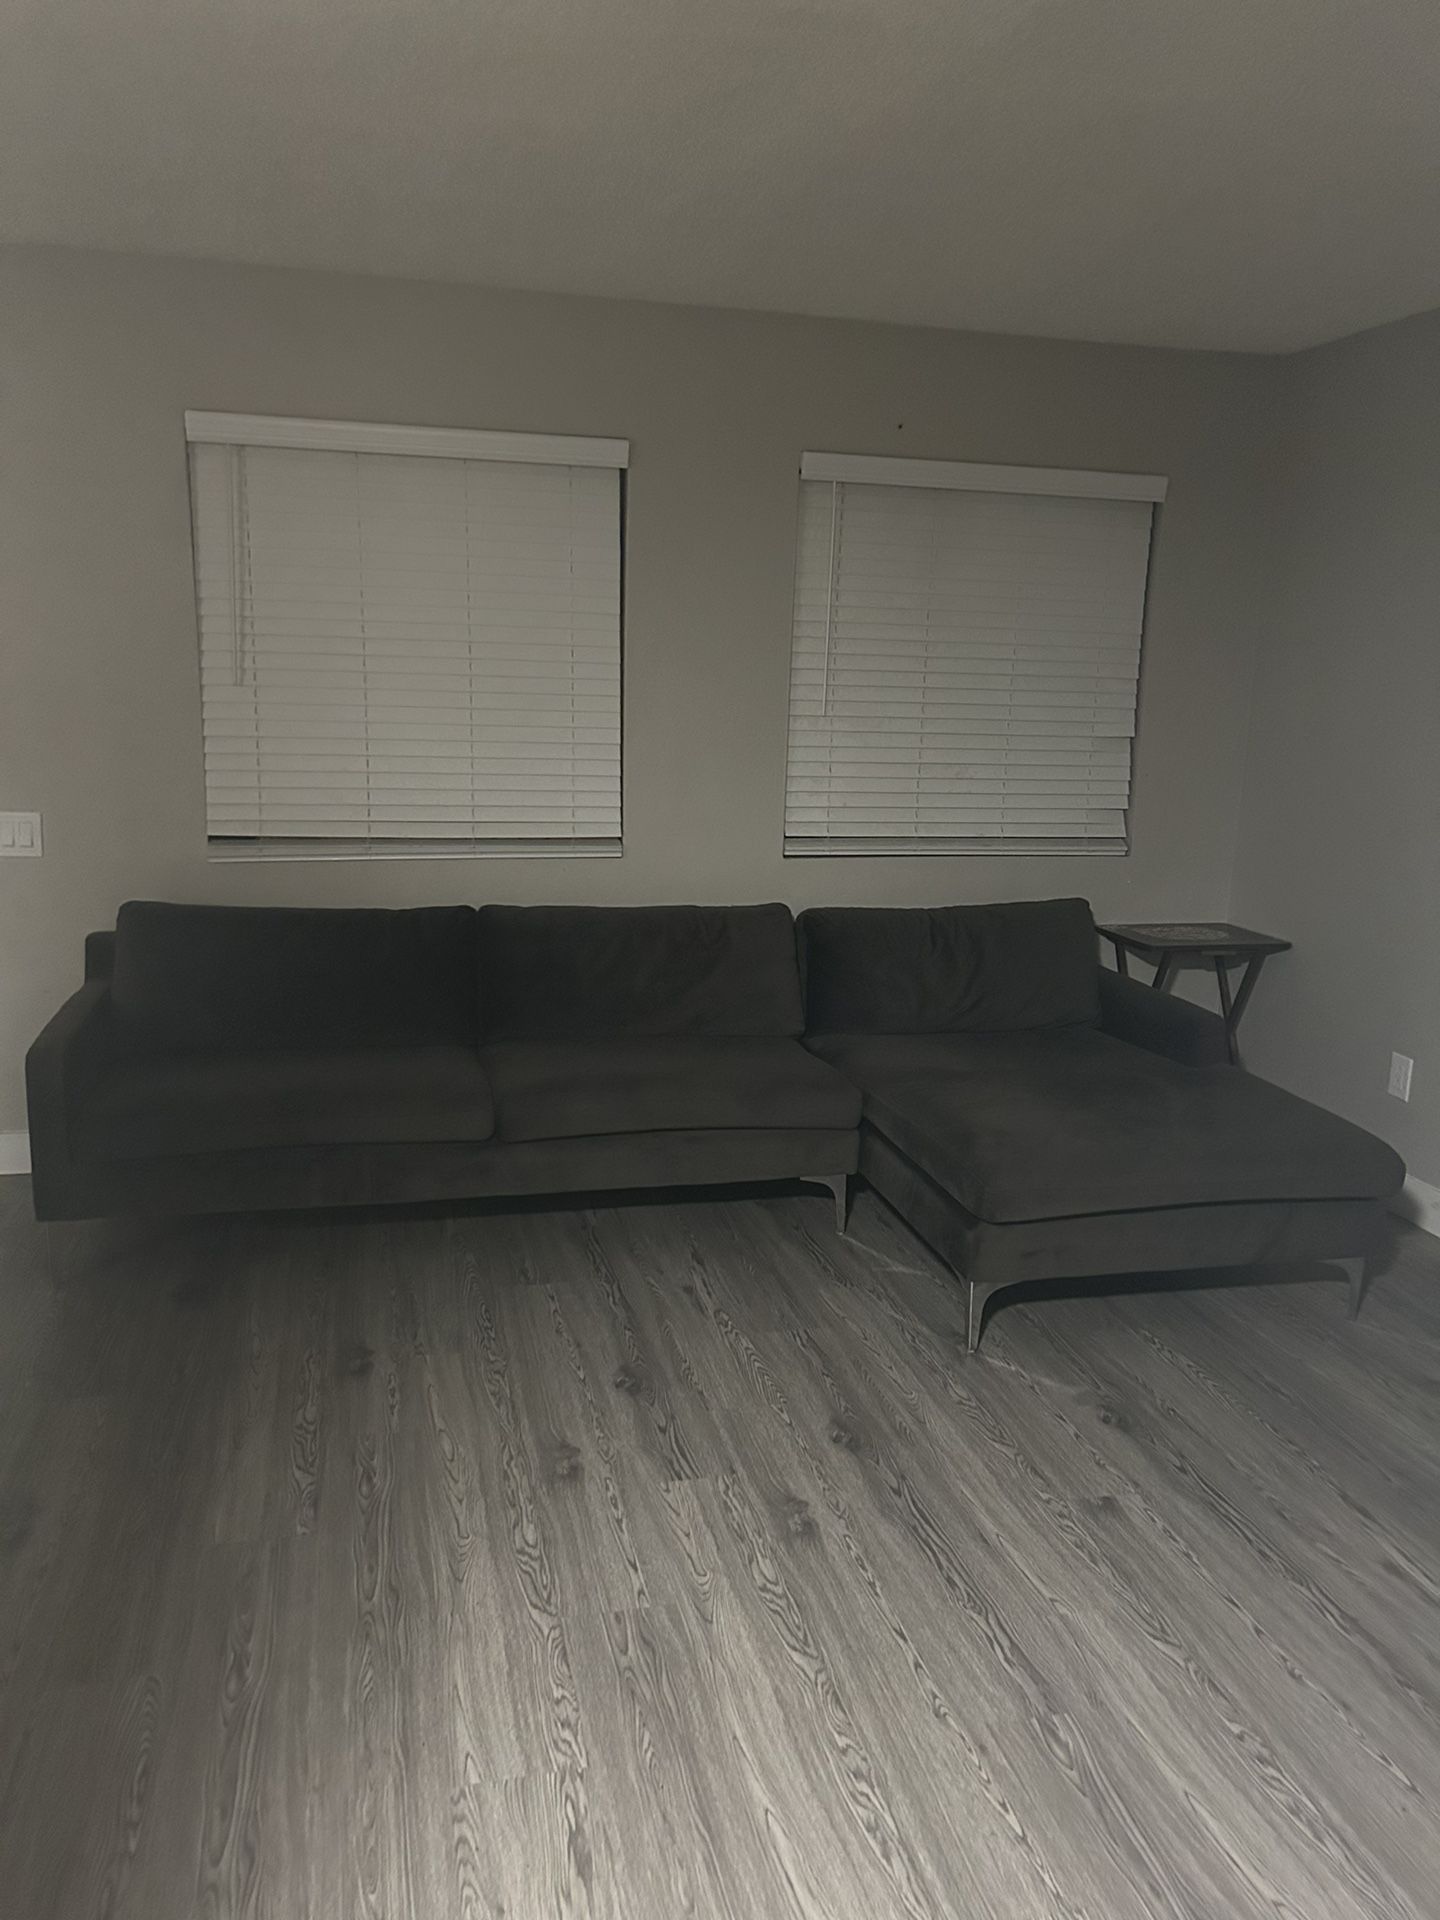 Dark Grey Couch 